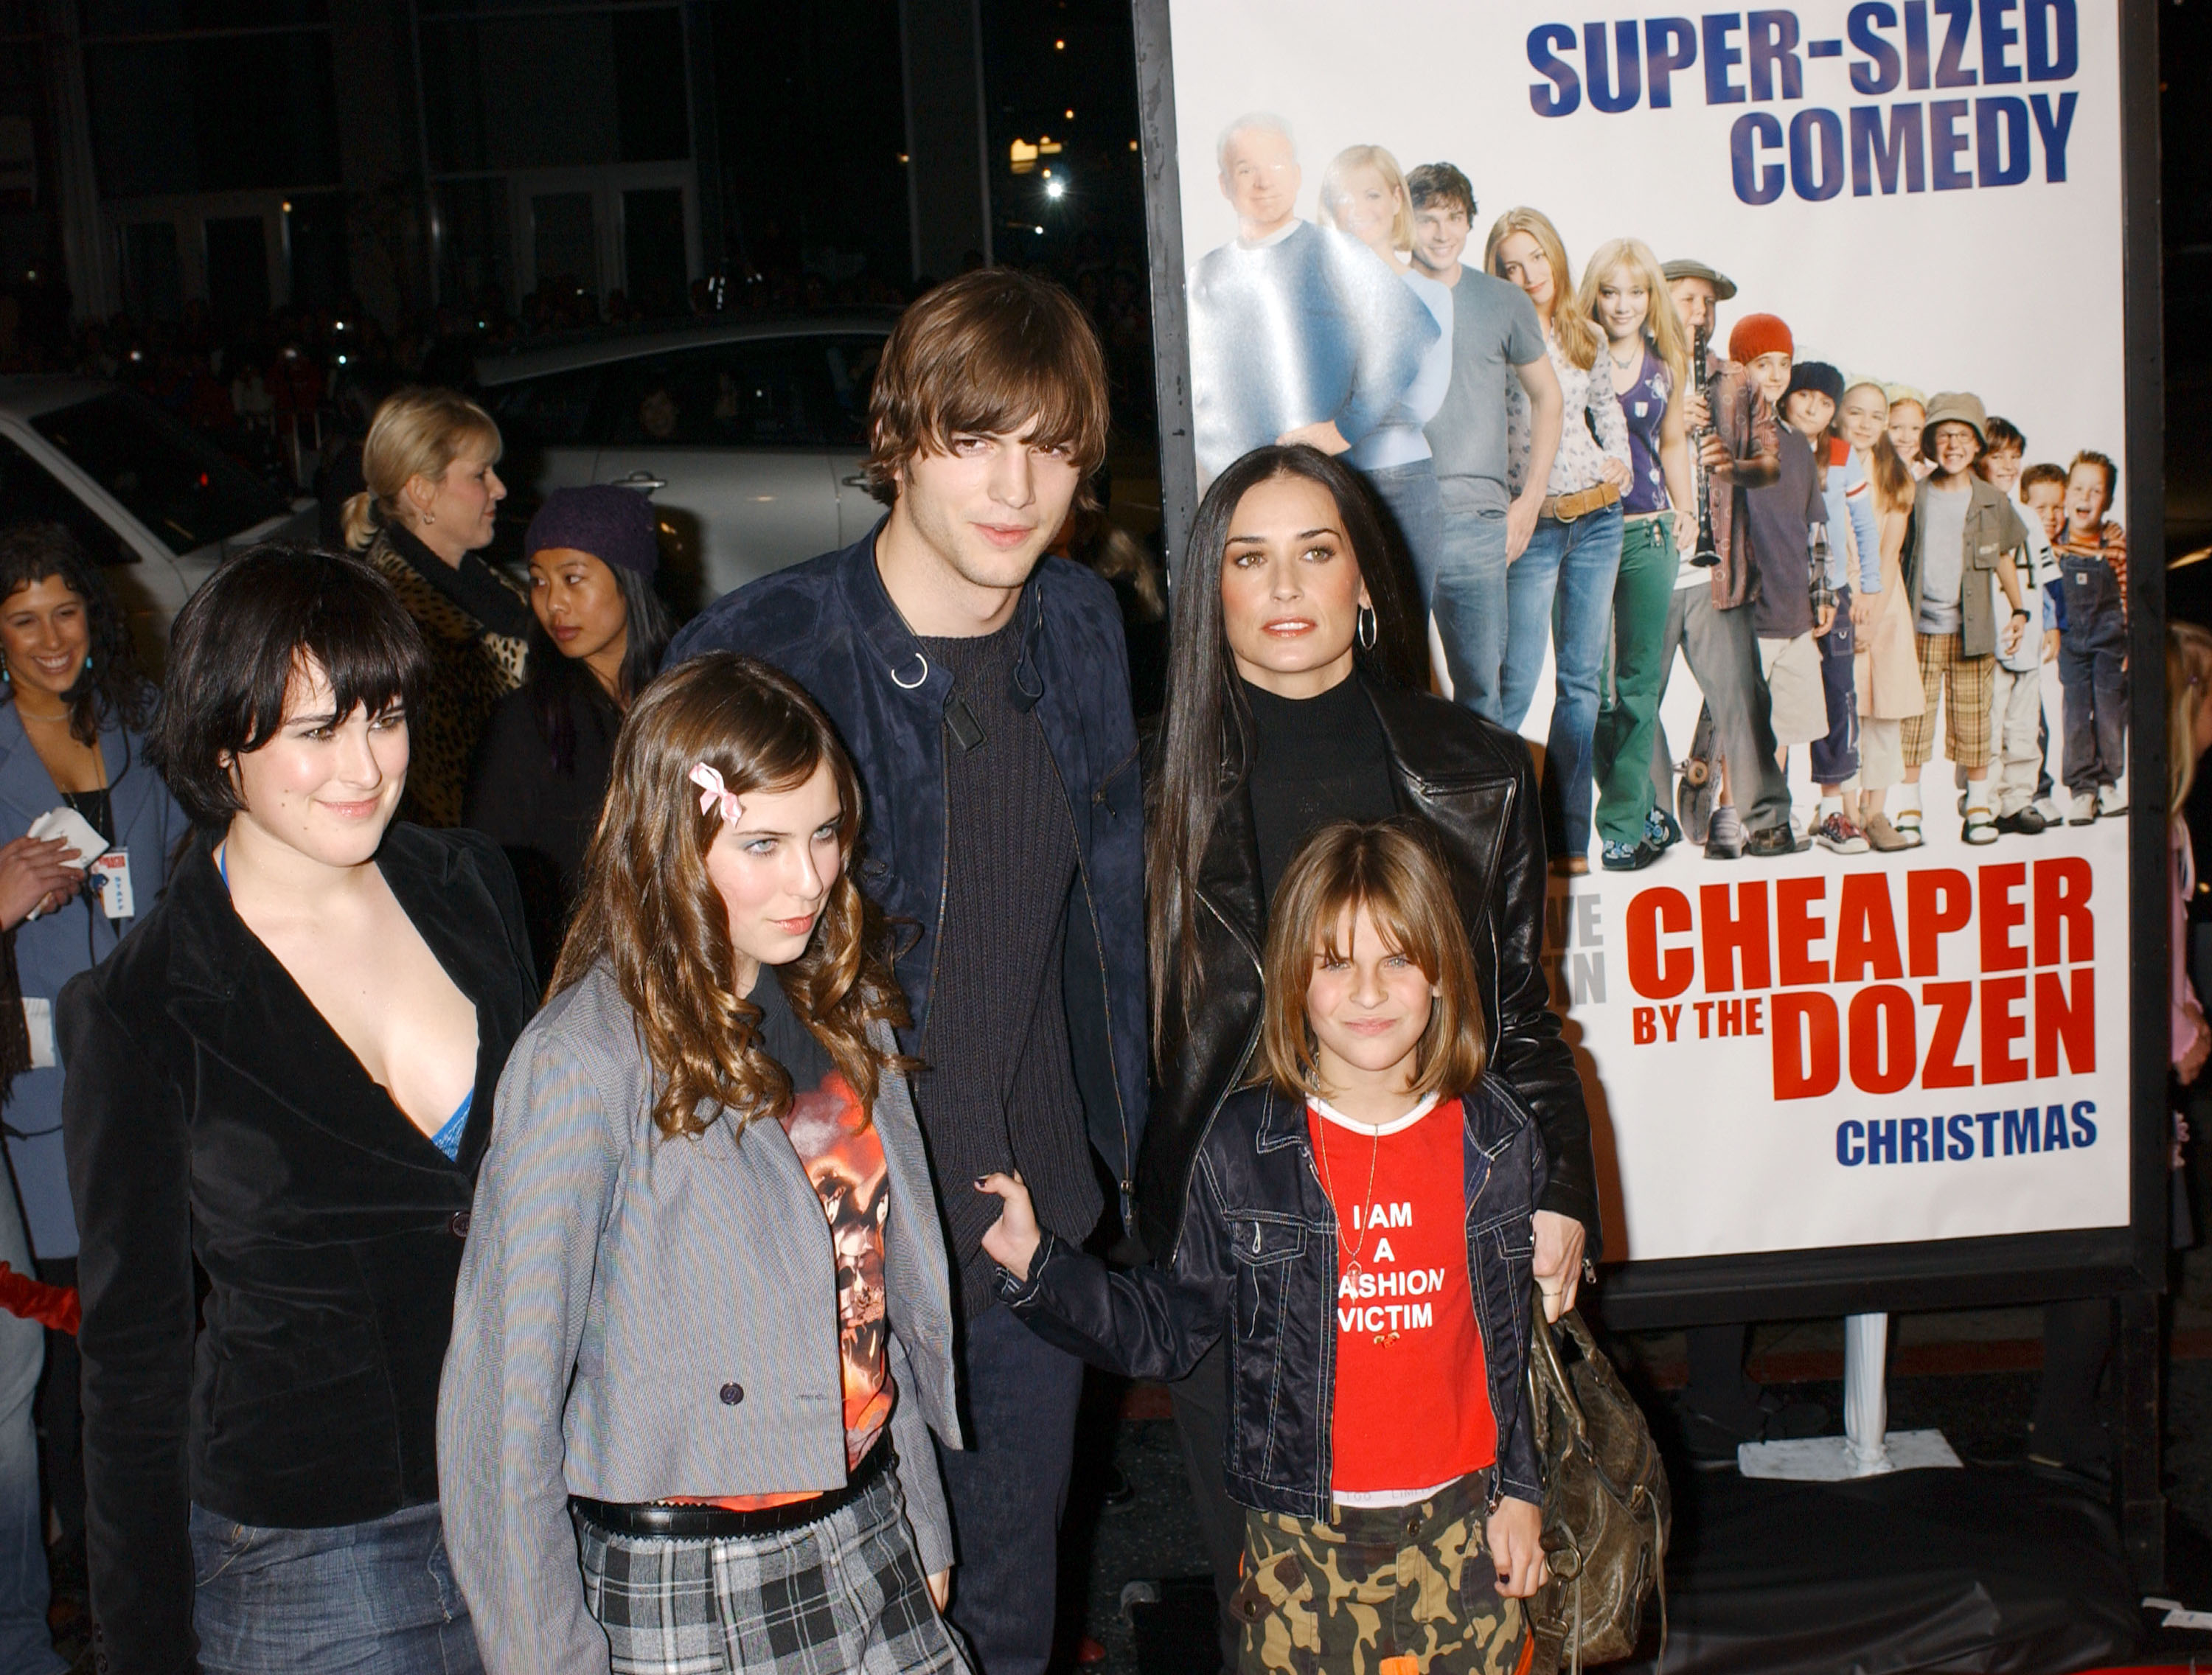 Ashton Kutcher, Demi Moore, and her children